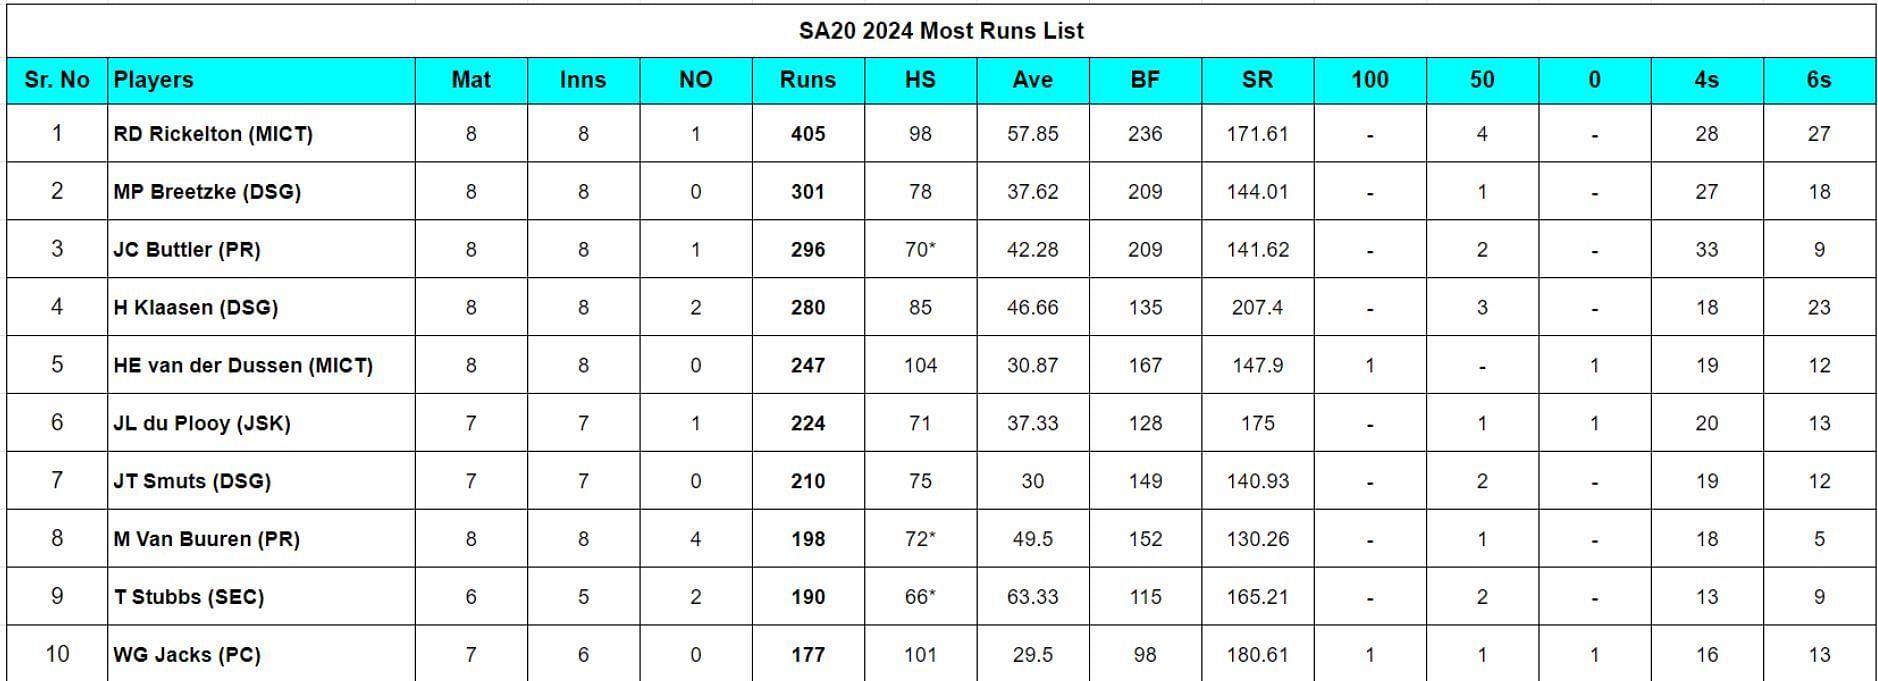 SA20 2024 Most Runs List updated after Match 23